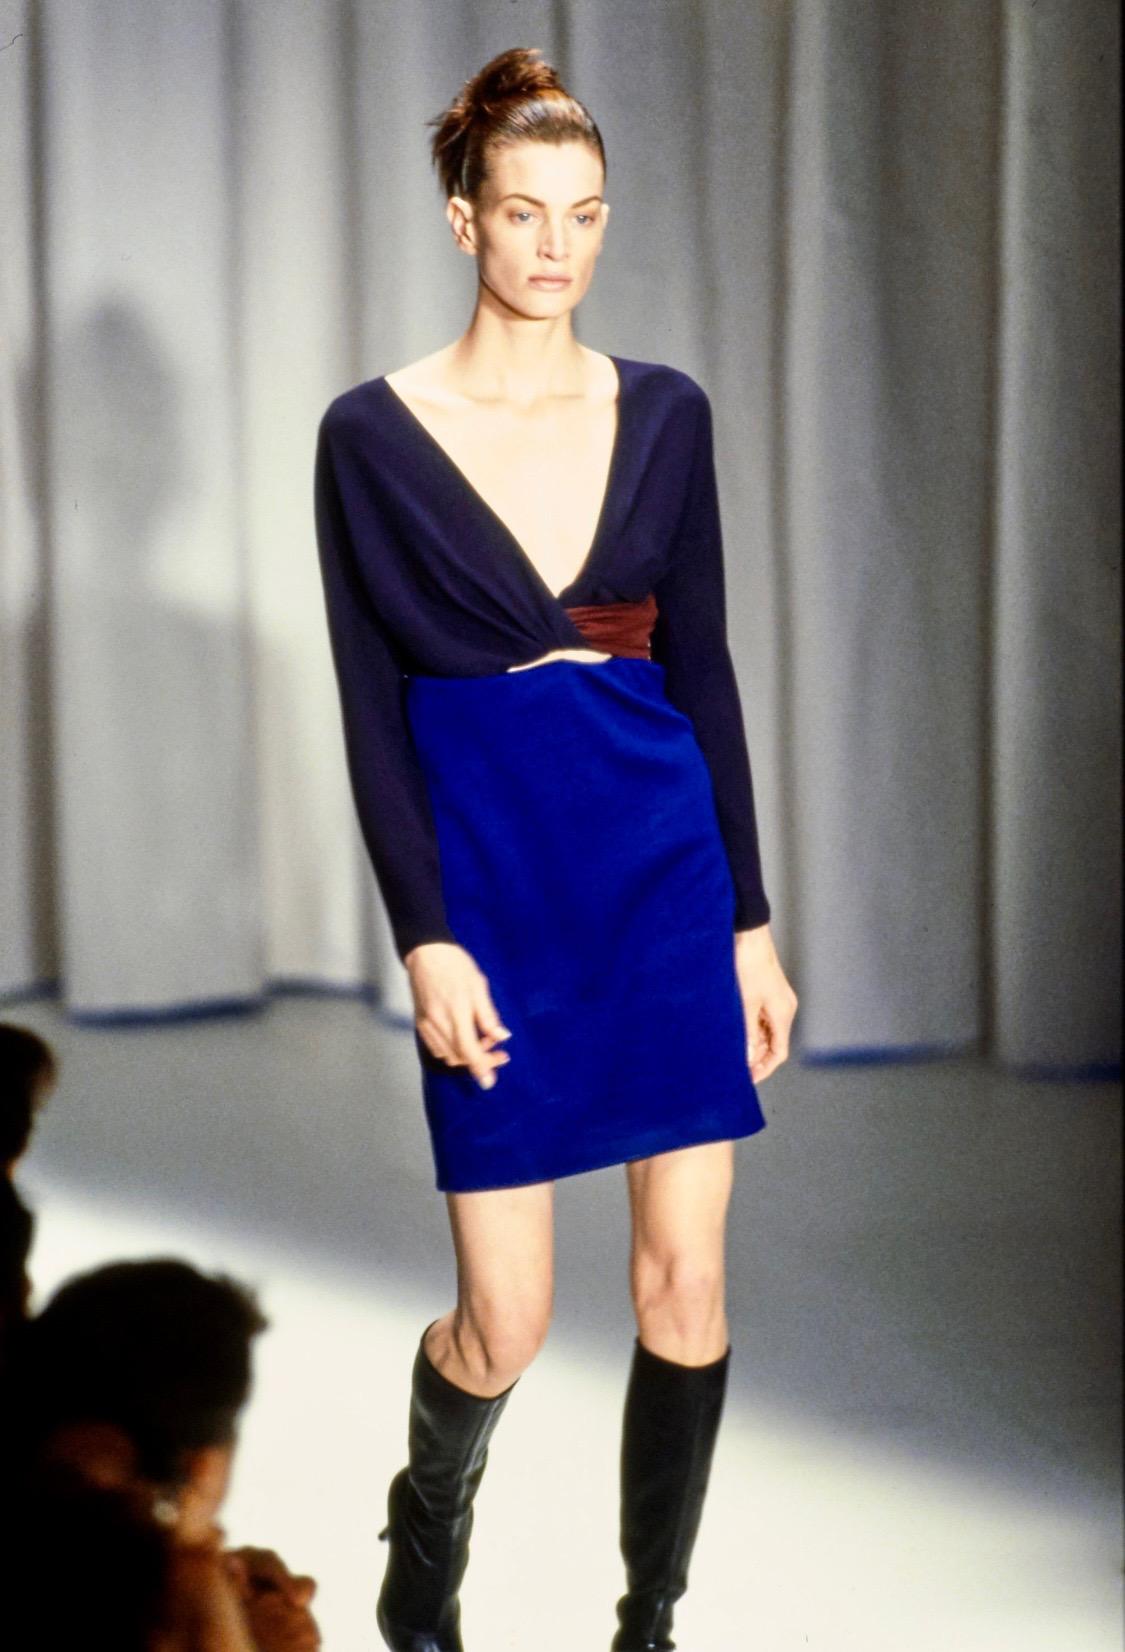 Présentation d'une mini robe color block Gianni Versace Couture, conçue par Gianni Versace. Issue de la Collectional Automne/Hiver 1997, cette robe est l'une des dernières créations présentées par Gianni avant sa mort en 1997. Elle a fait ses débuts